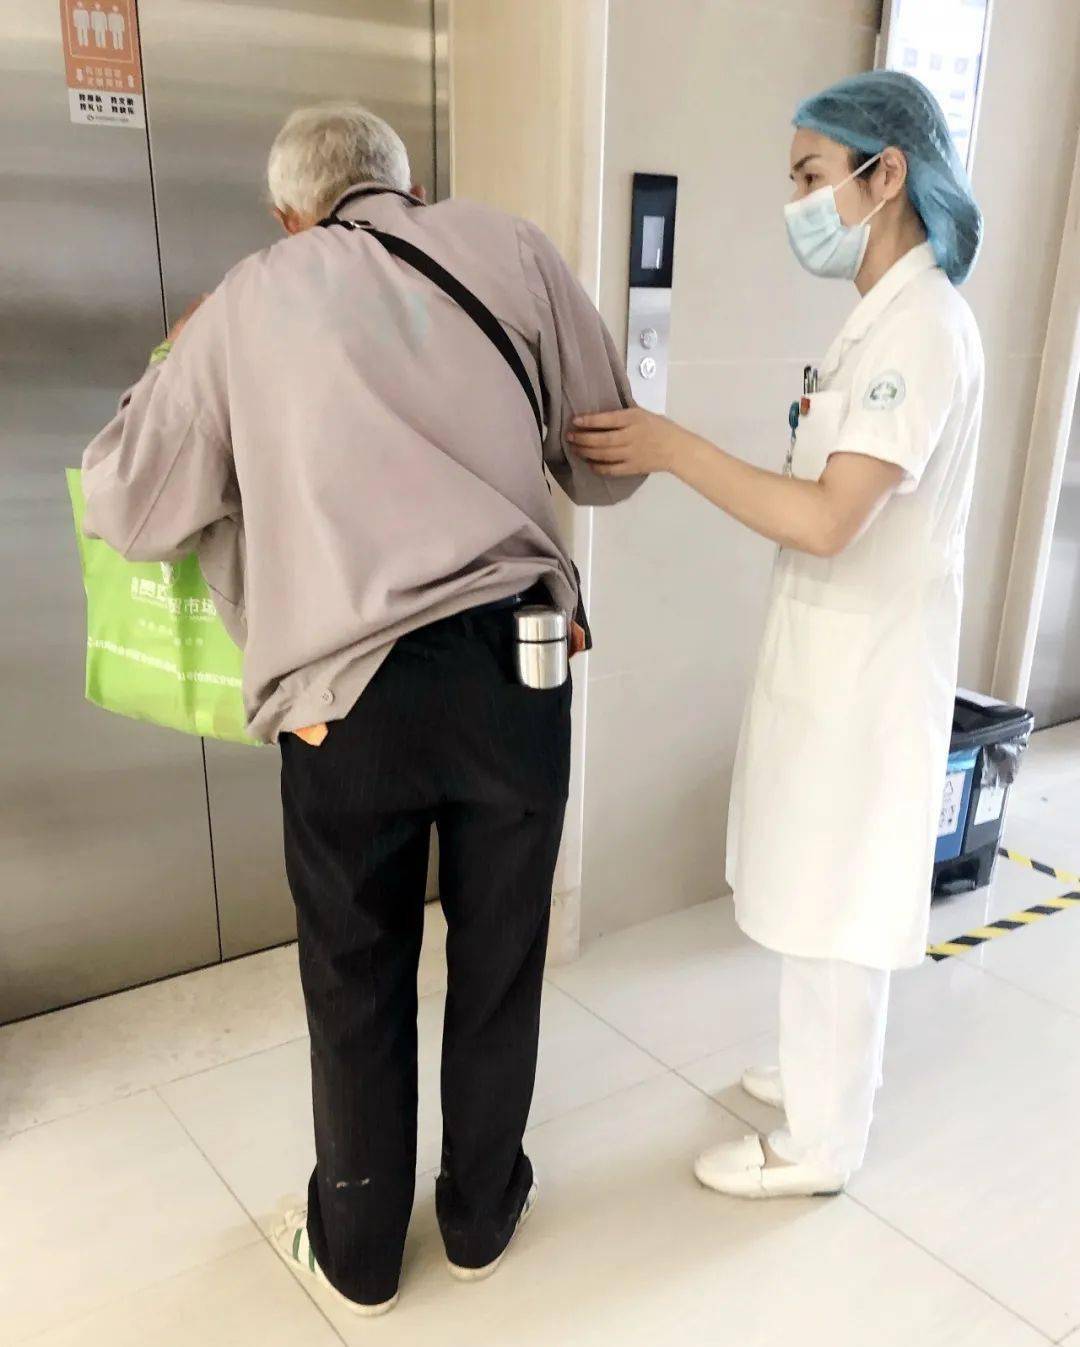 关于深圳市第二人民医院医院跑腿陪诊挂号，服务周到包你满意的信息